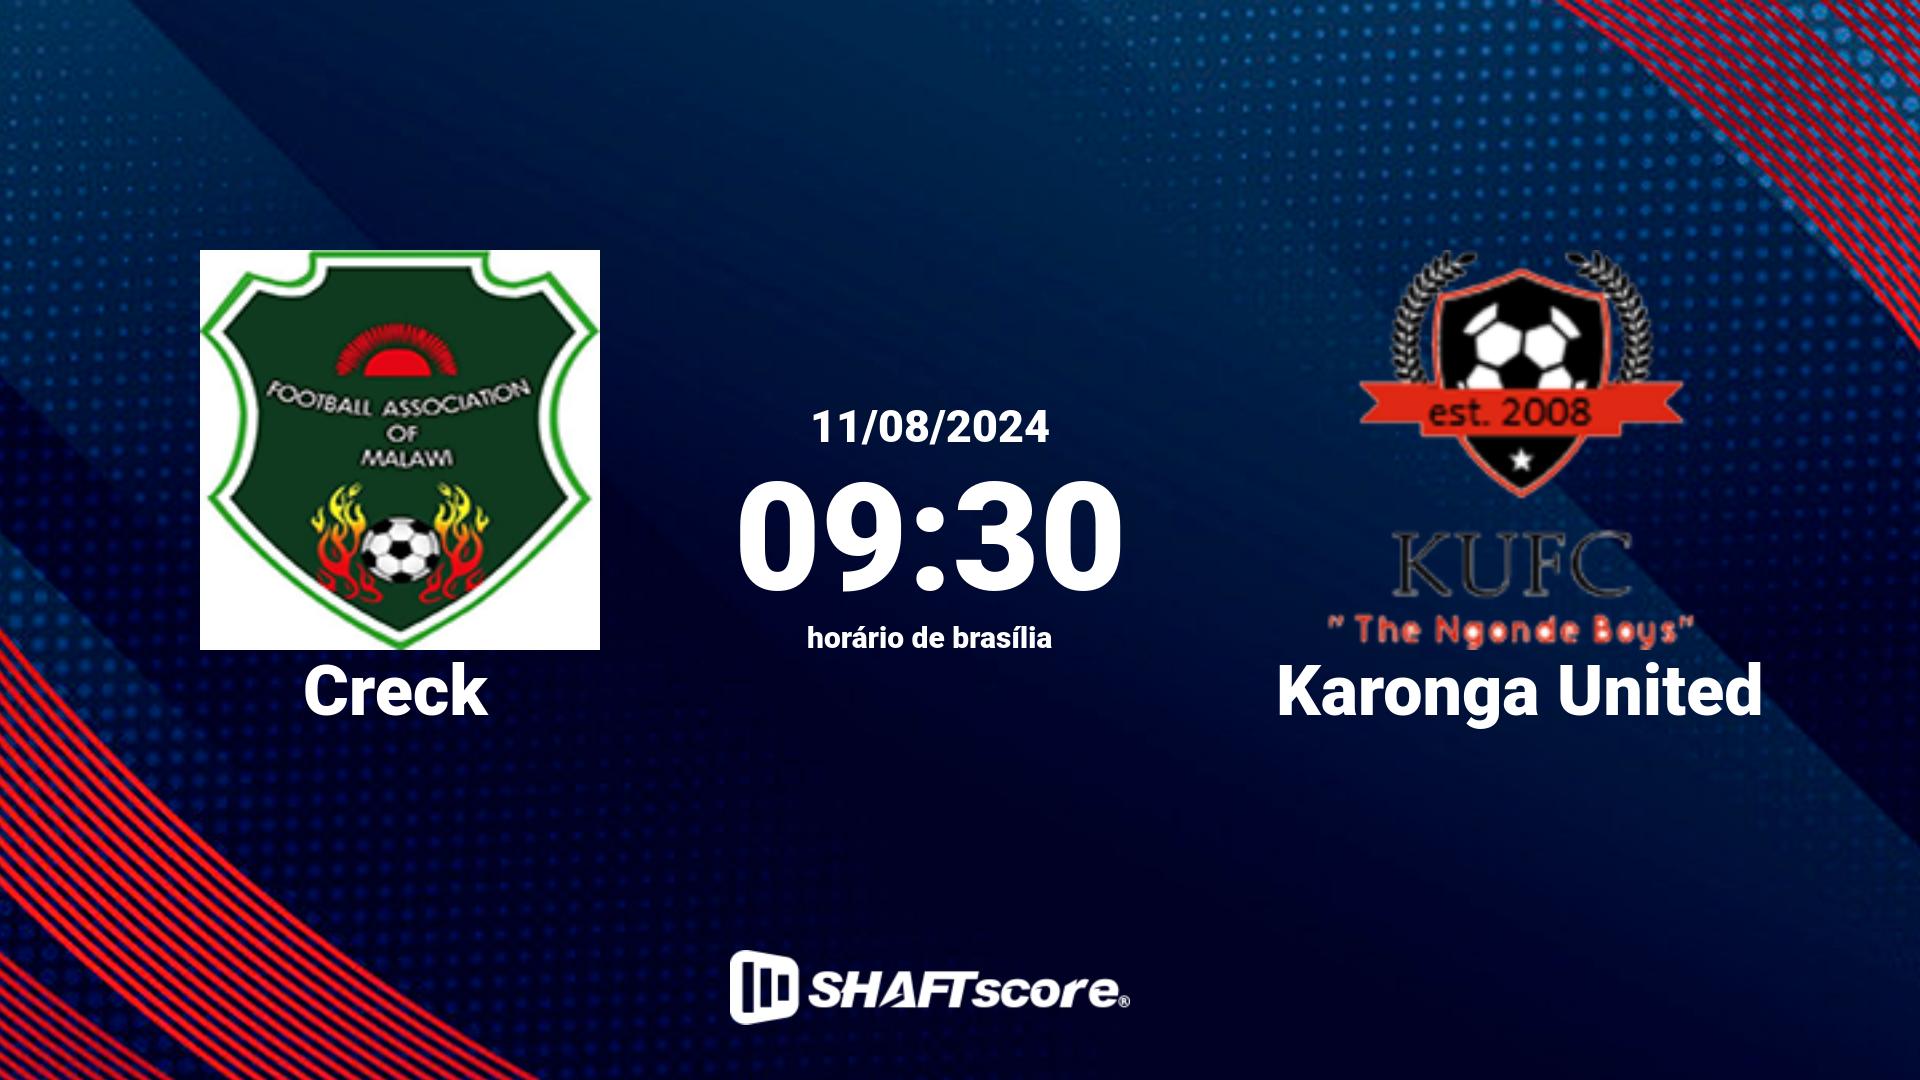 Estatísticas do jogo Creck vs Karonga United 11.08 09:30